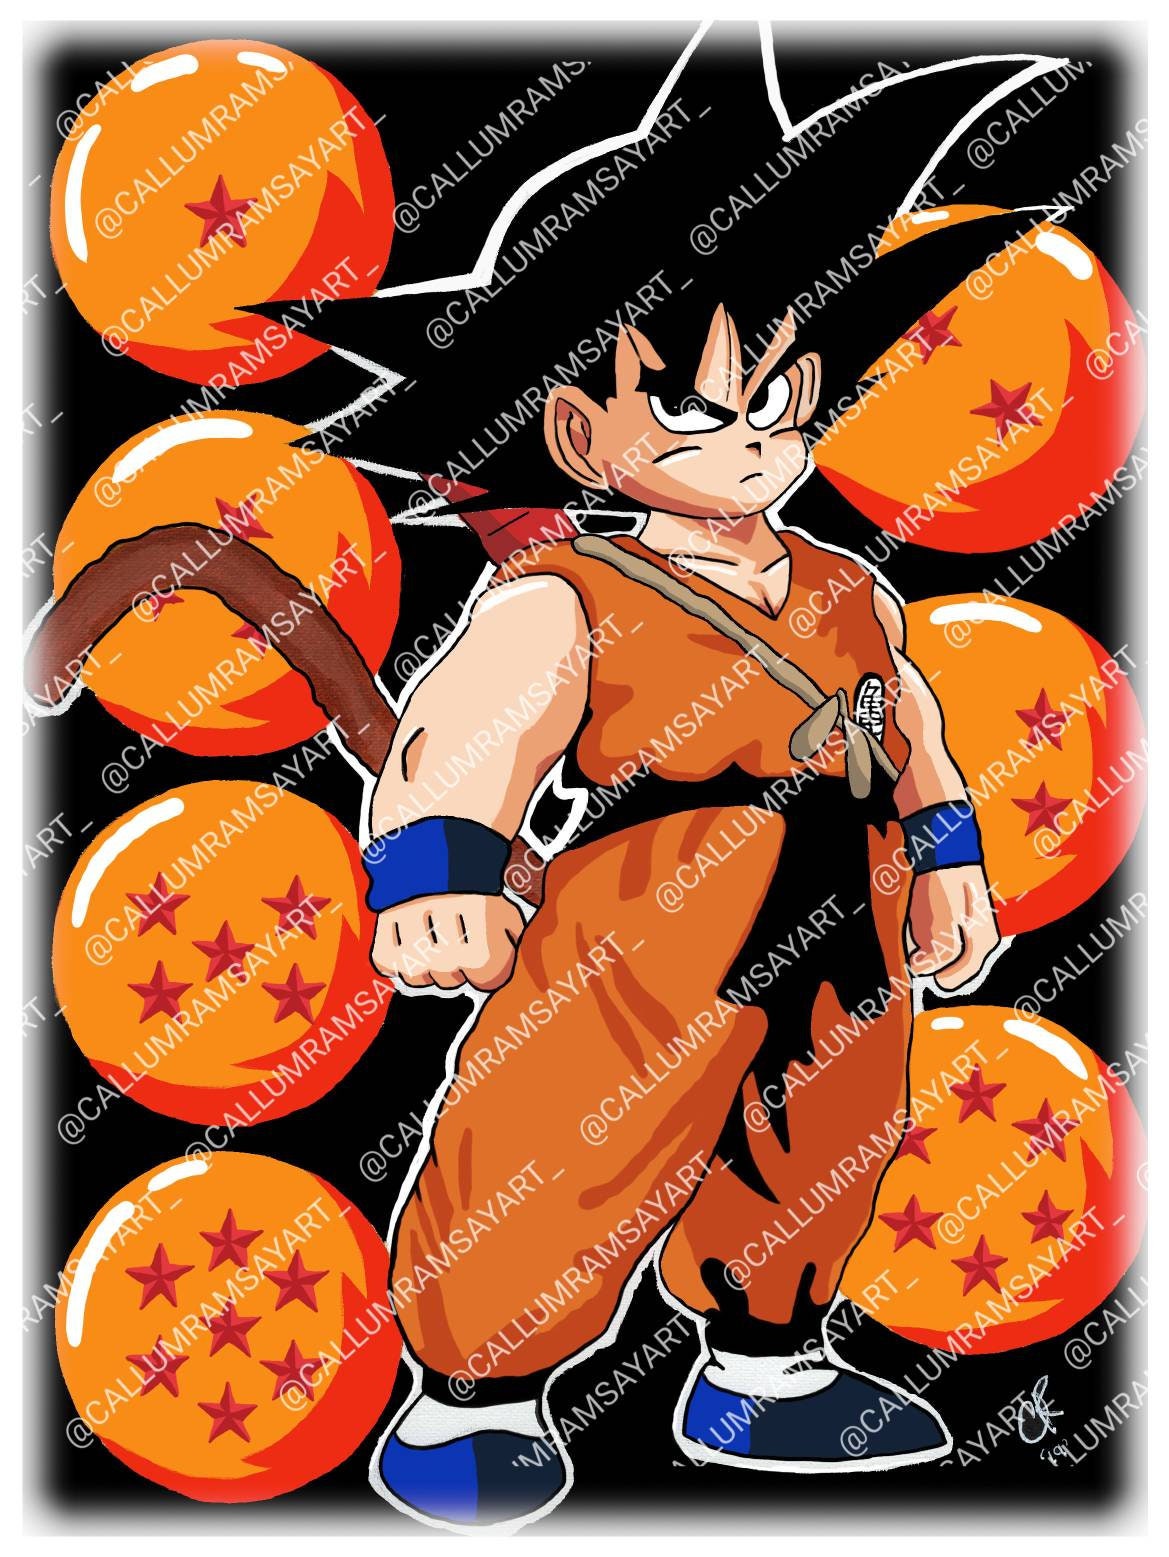 Art básica - Desenho do Goku black concluído pessoal